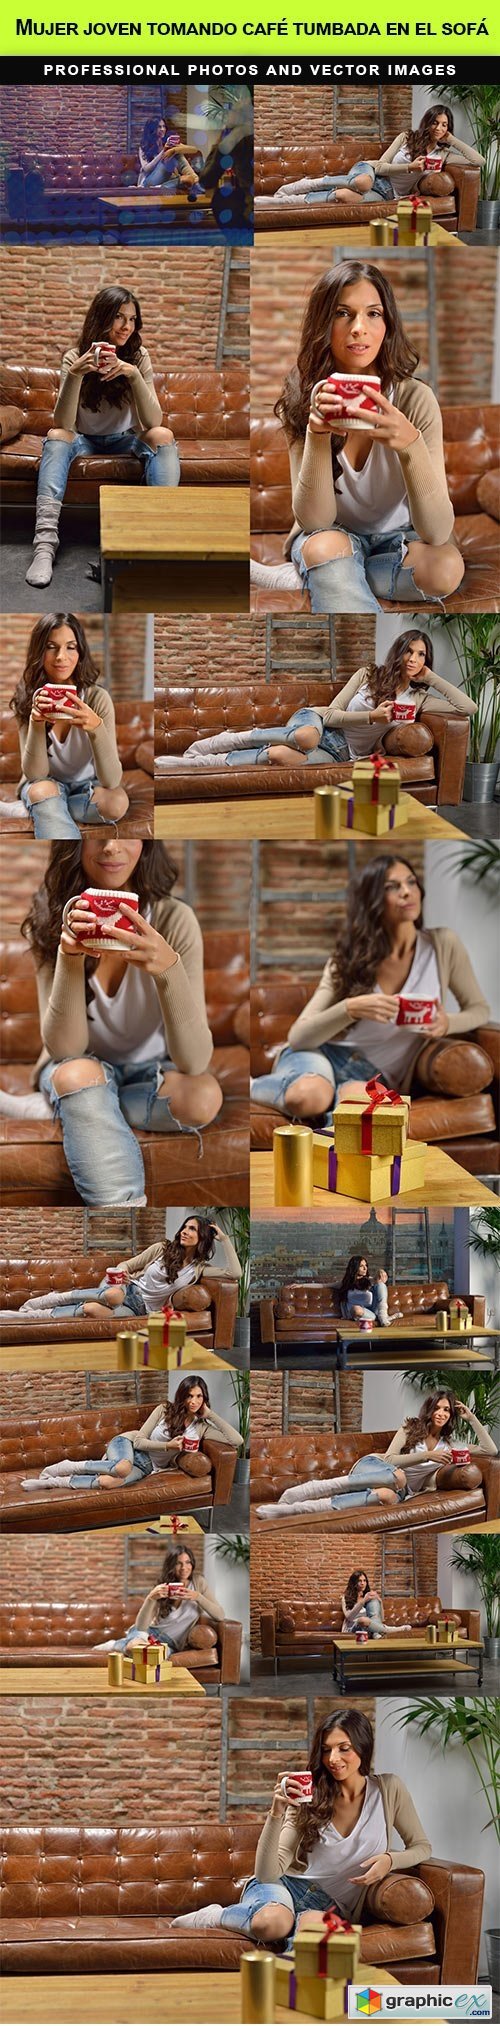 Mujer joven tomando cafe tumbada en el sofa